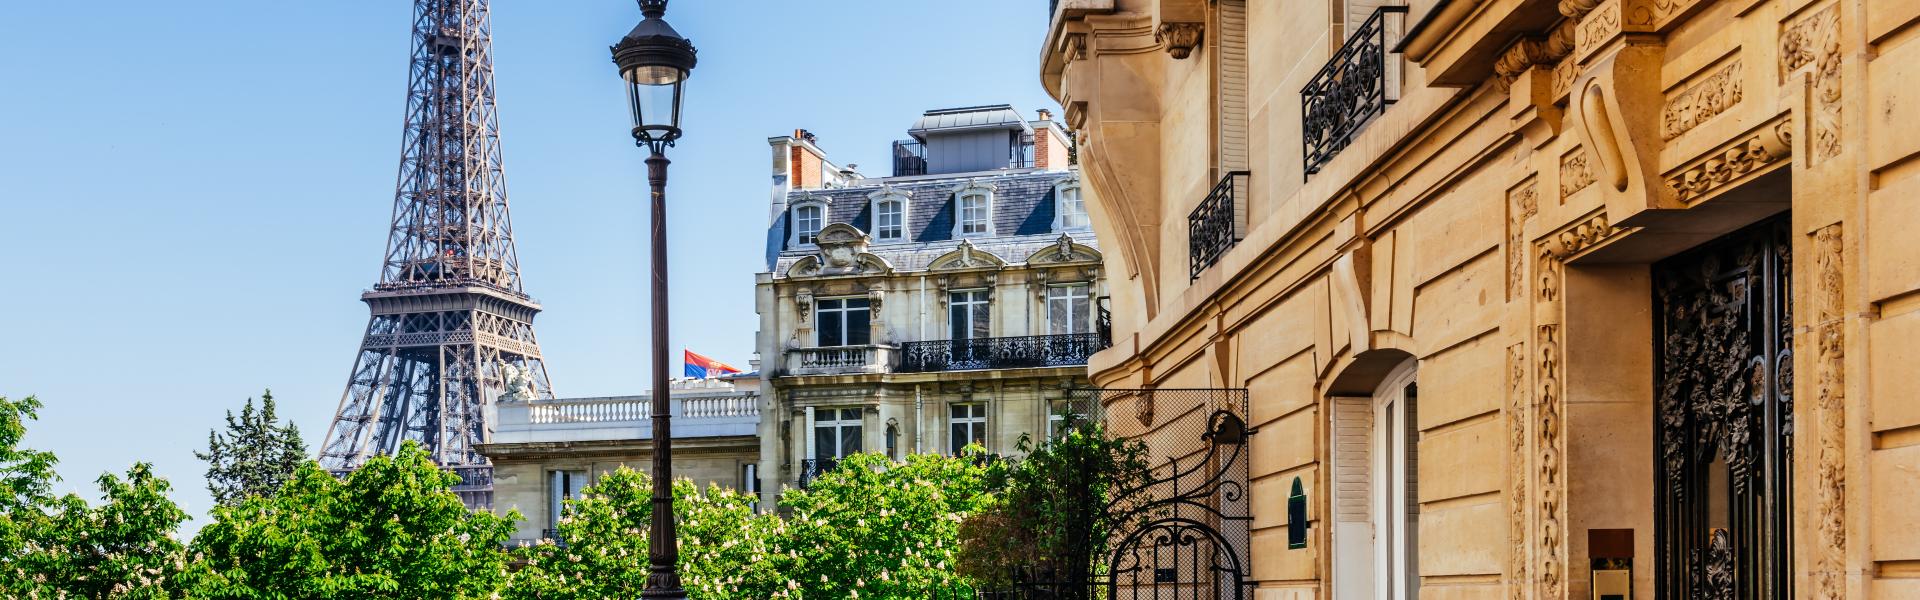 Noclegi i apartamenty wakacyjne w Paryżu - Casamundo